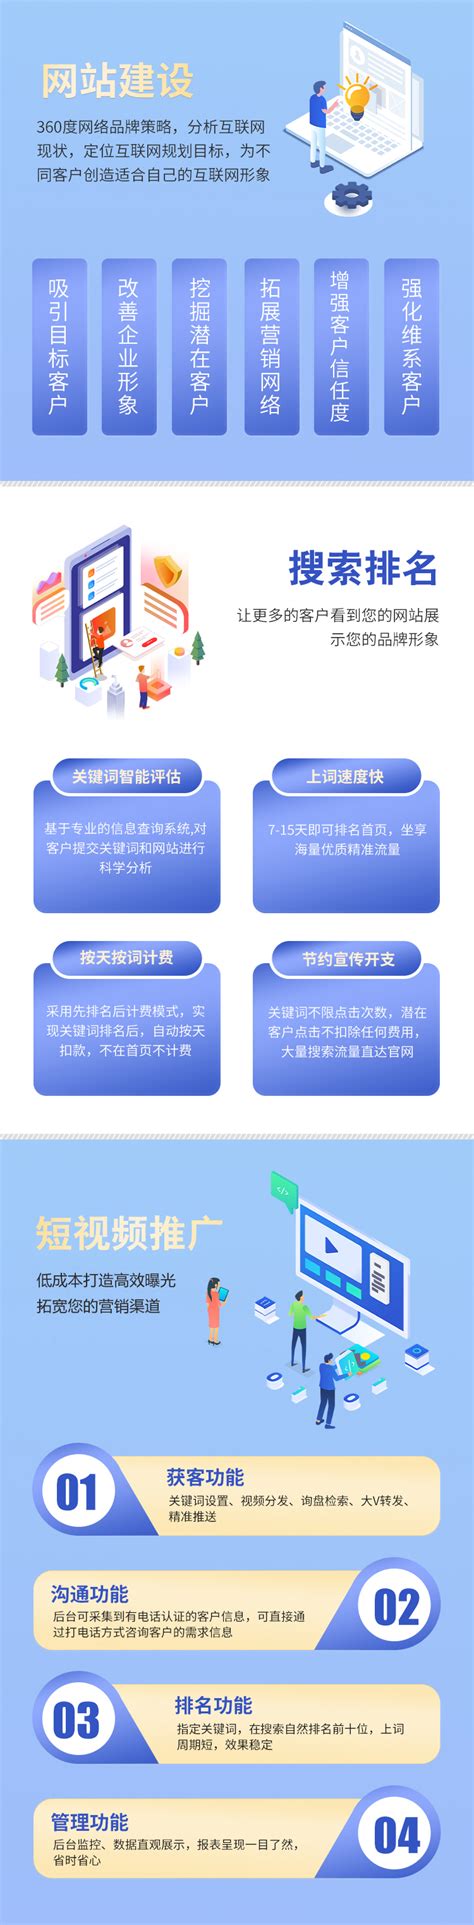 浙江网站建设软件推广